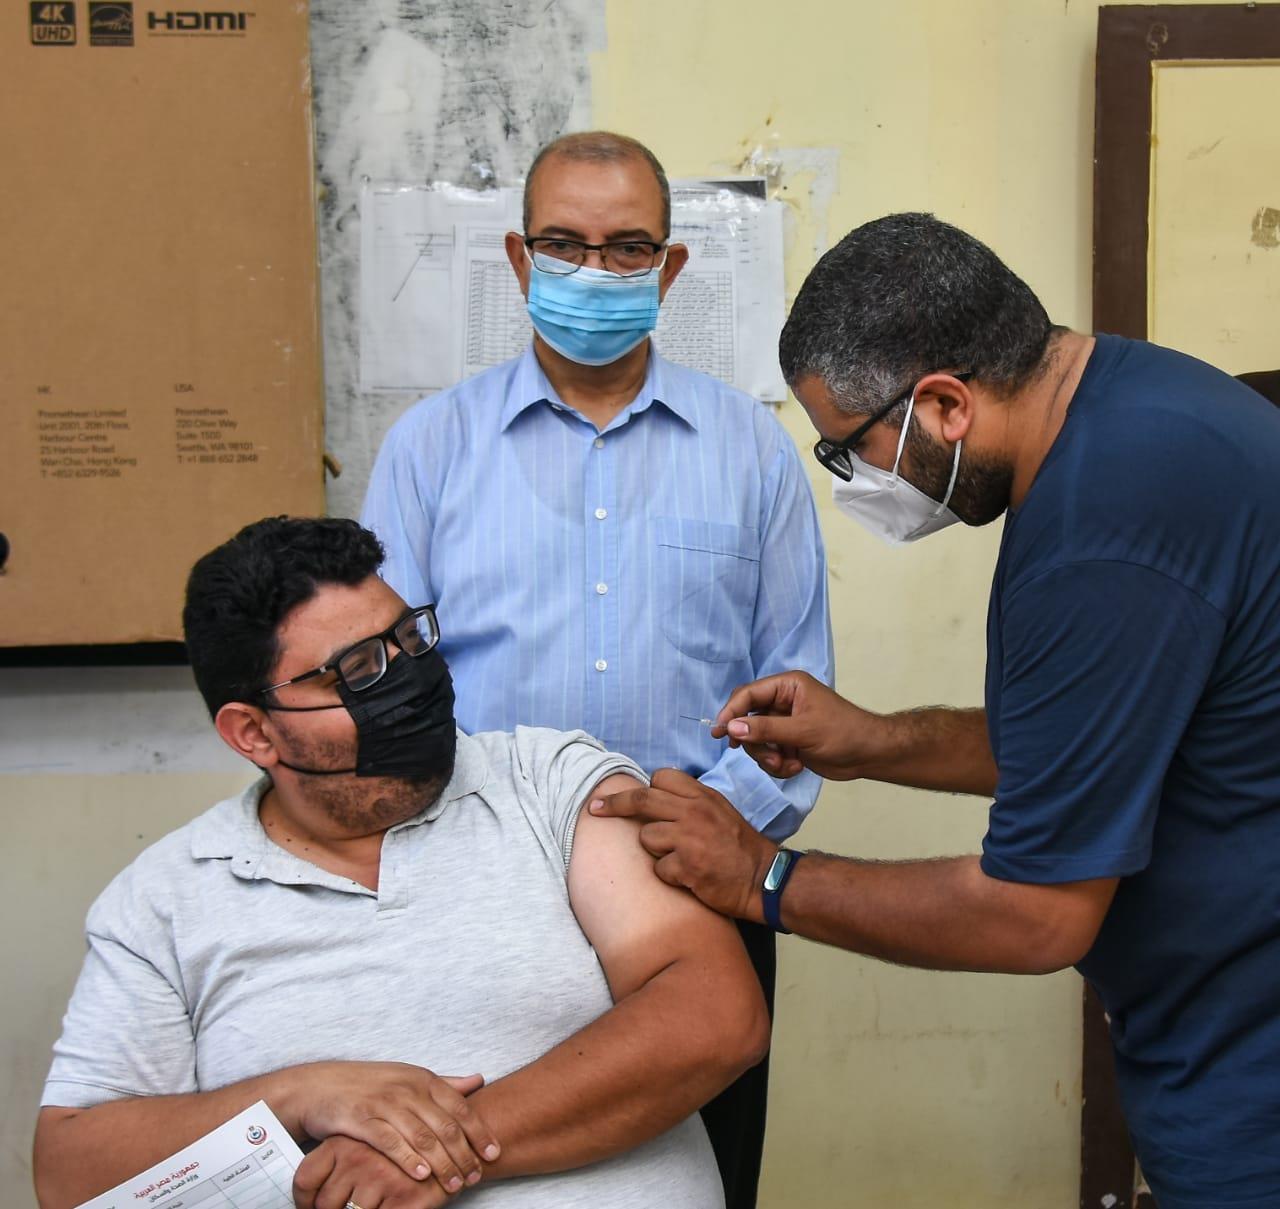  تطعيم 350 معلمًا بلقاح كورونا في بورسعيد